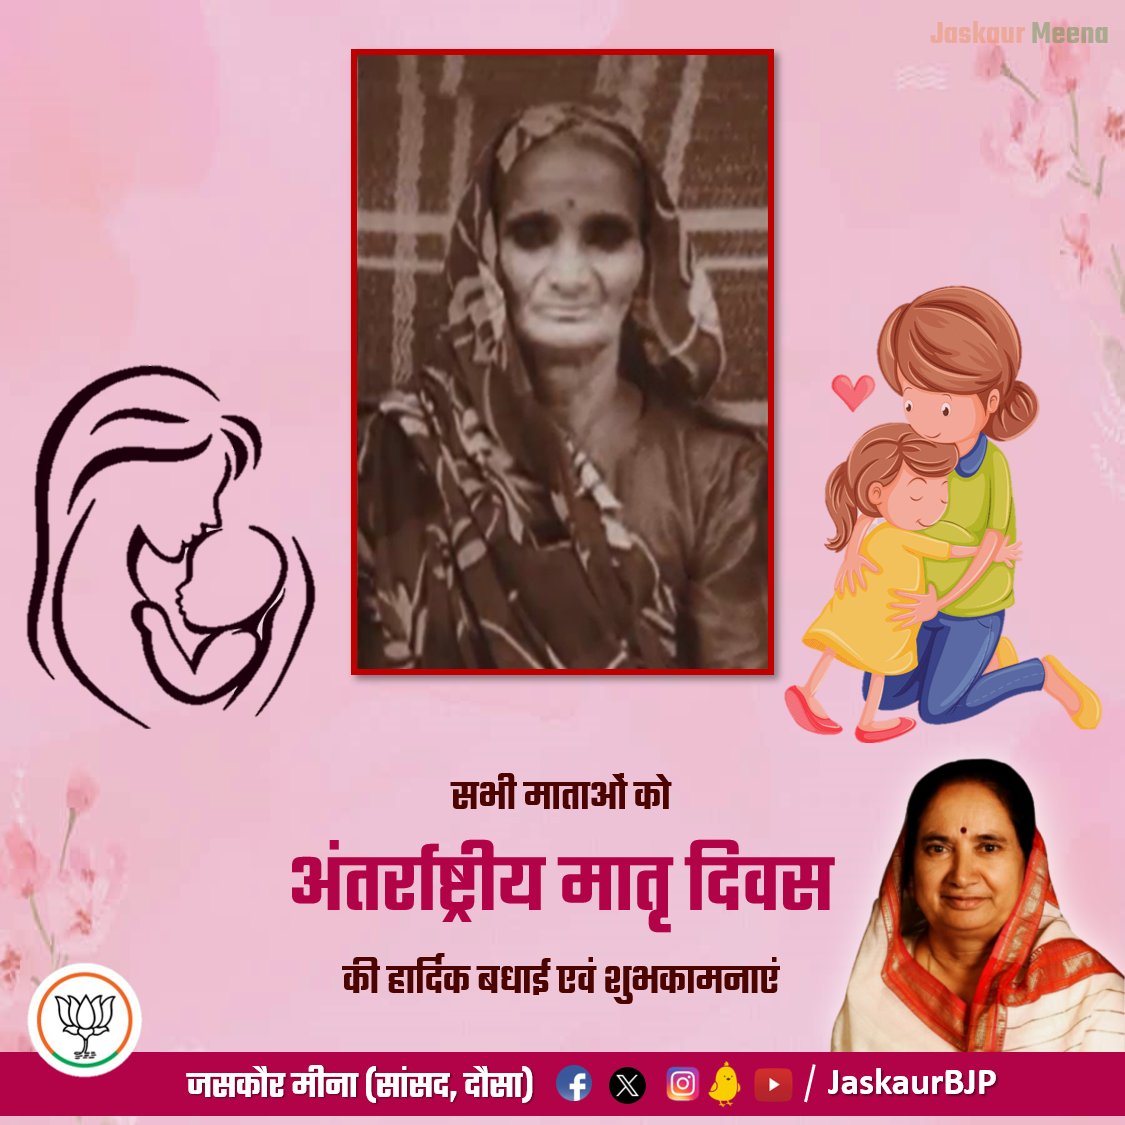 नास्ति मातृसमा छाया, नास्ति मातृसमा गतिः। 
नास्ति मातृसमं त्राण, नास्ति मातृसमा प्रिया।।

मातृ दिवस पर देश व प्रदेश की समस्त मातृ शक्ति को सादर नमन एवं हार्दिक शुभकामनाएं। 

#HappyMothersDay #Mothersday #BJP #Dausa #MemberofParliament #JaskaurMeena